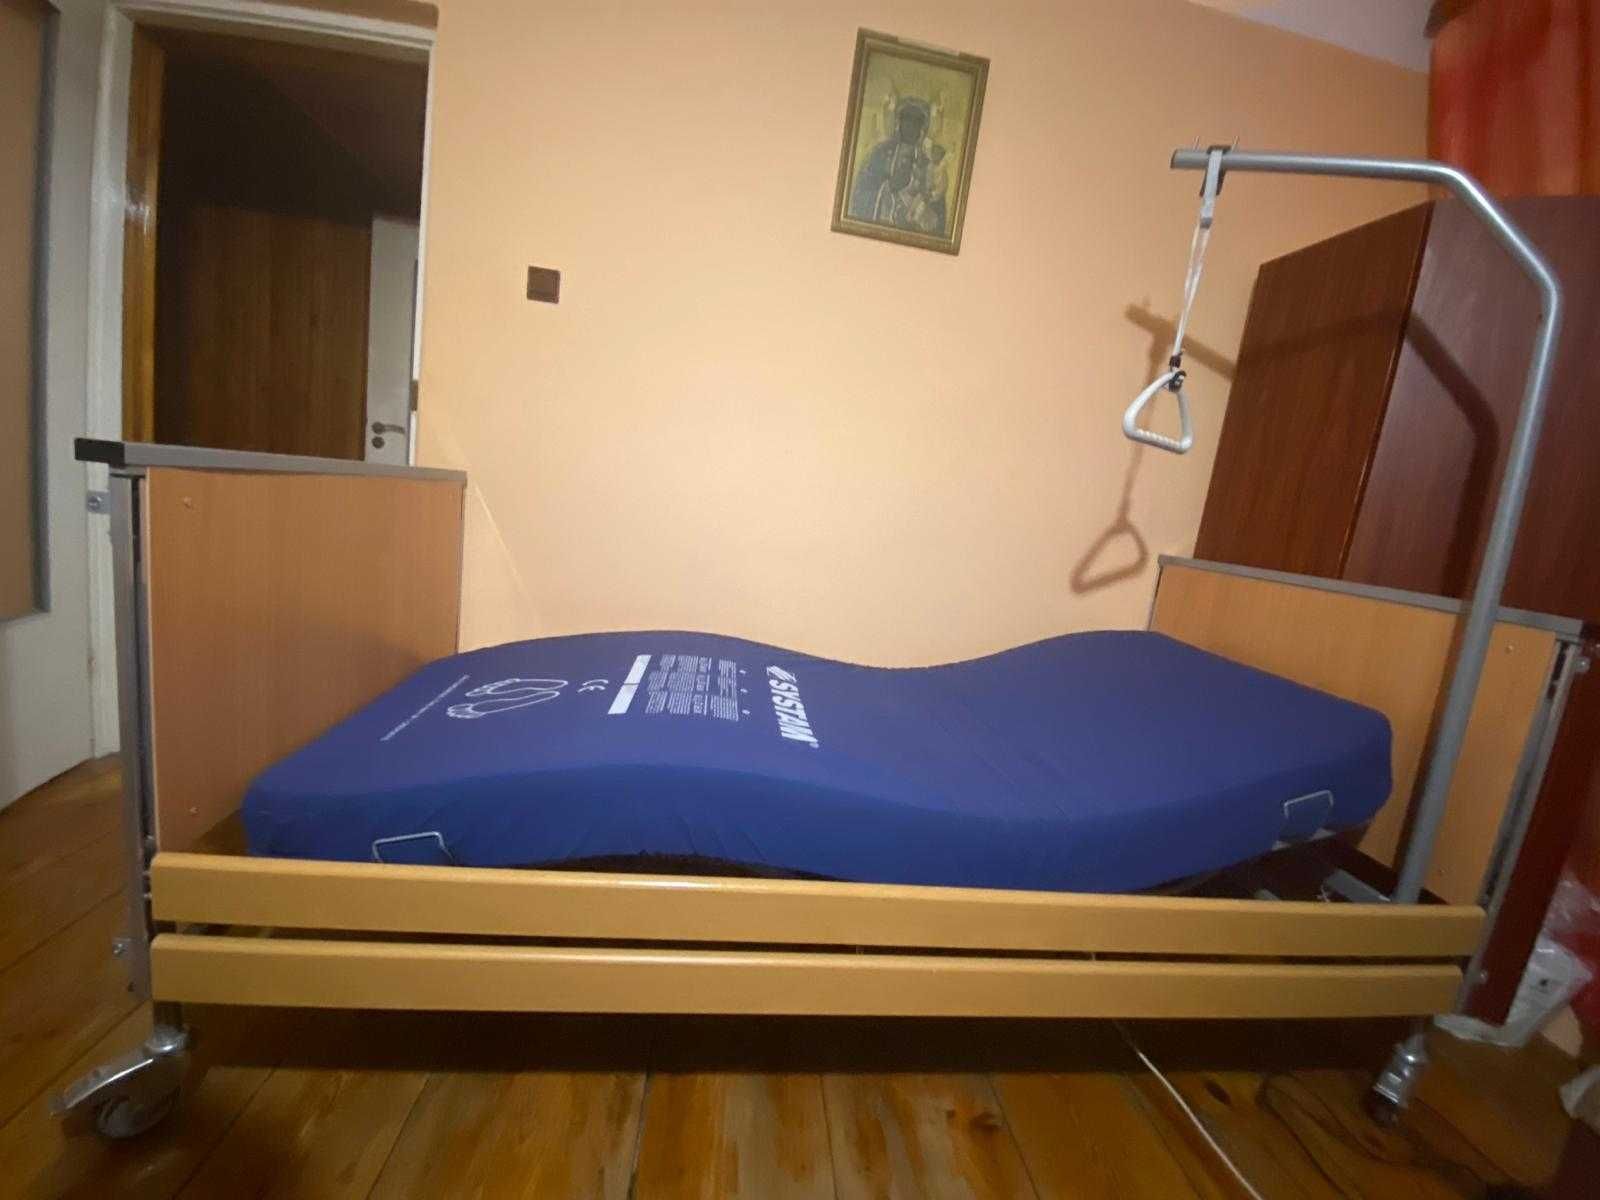 Łóżko rehabilitacyjne  REHABED Taurus 2